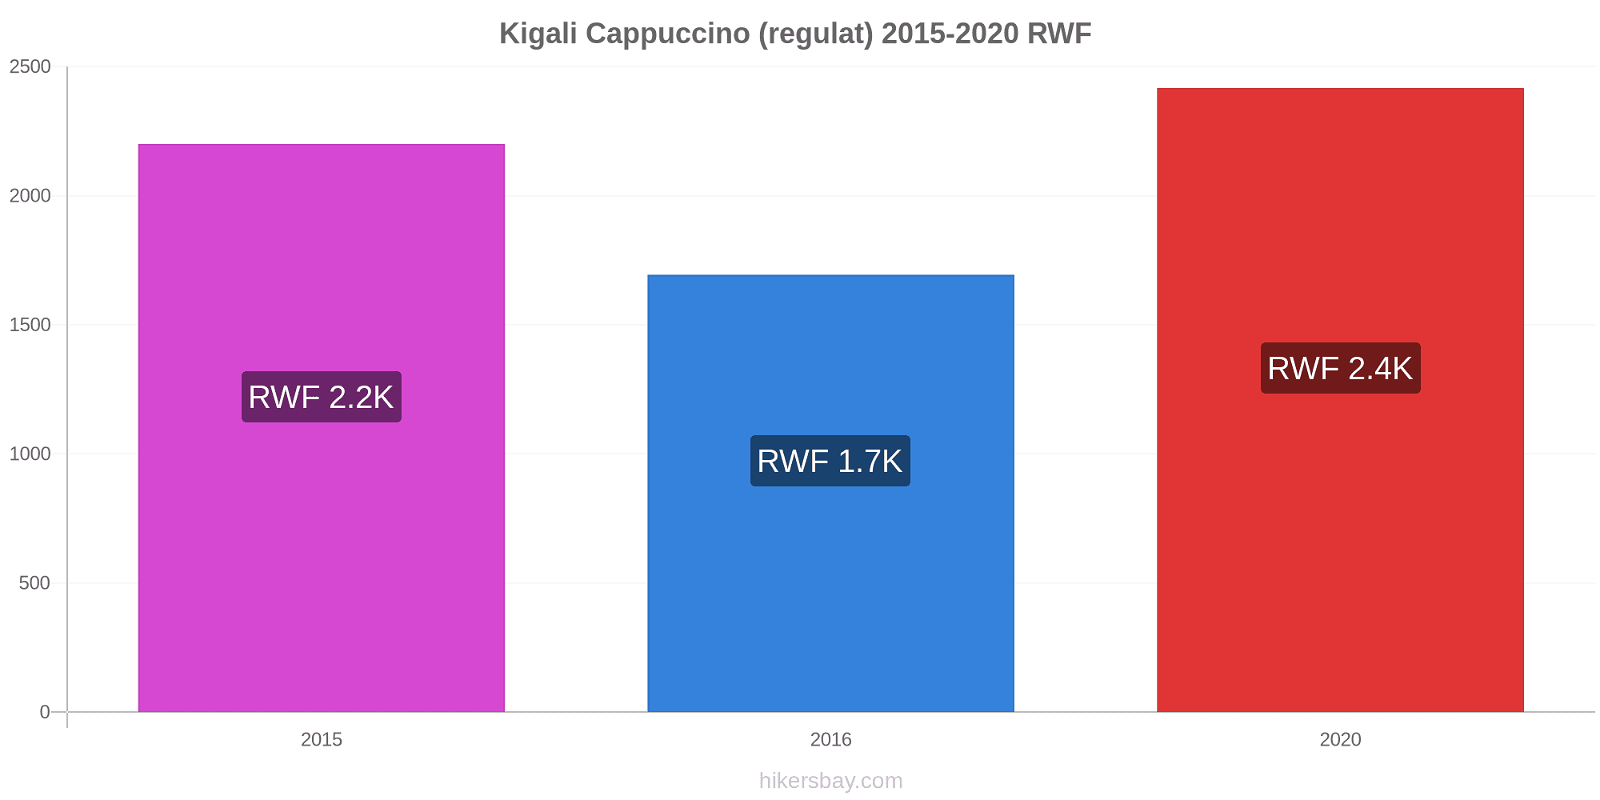 Kigali modificări de preț Cappuccino (regulat) hikersbay.com